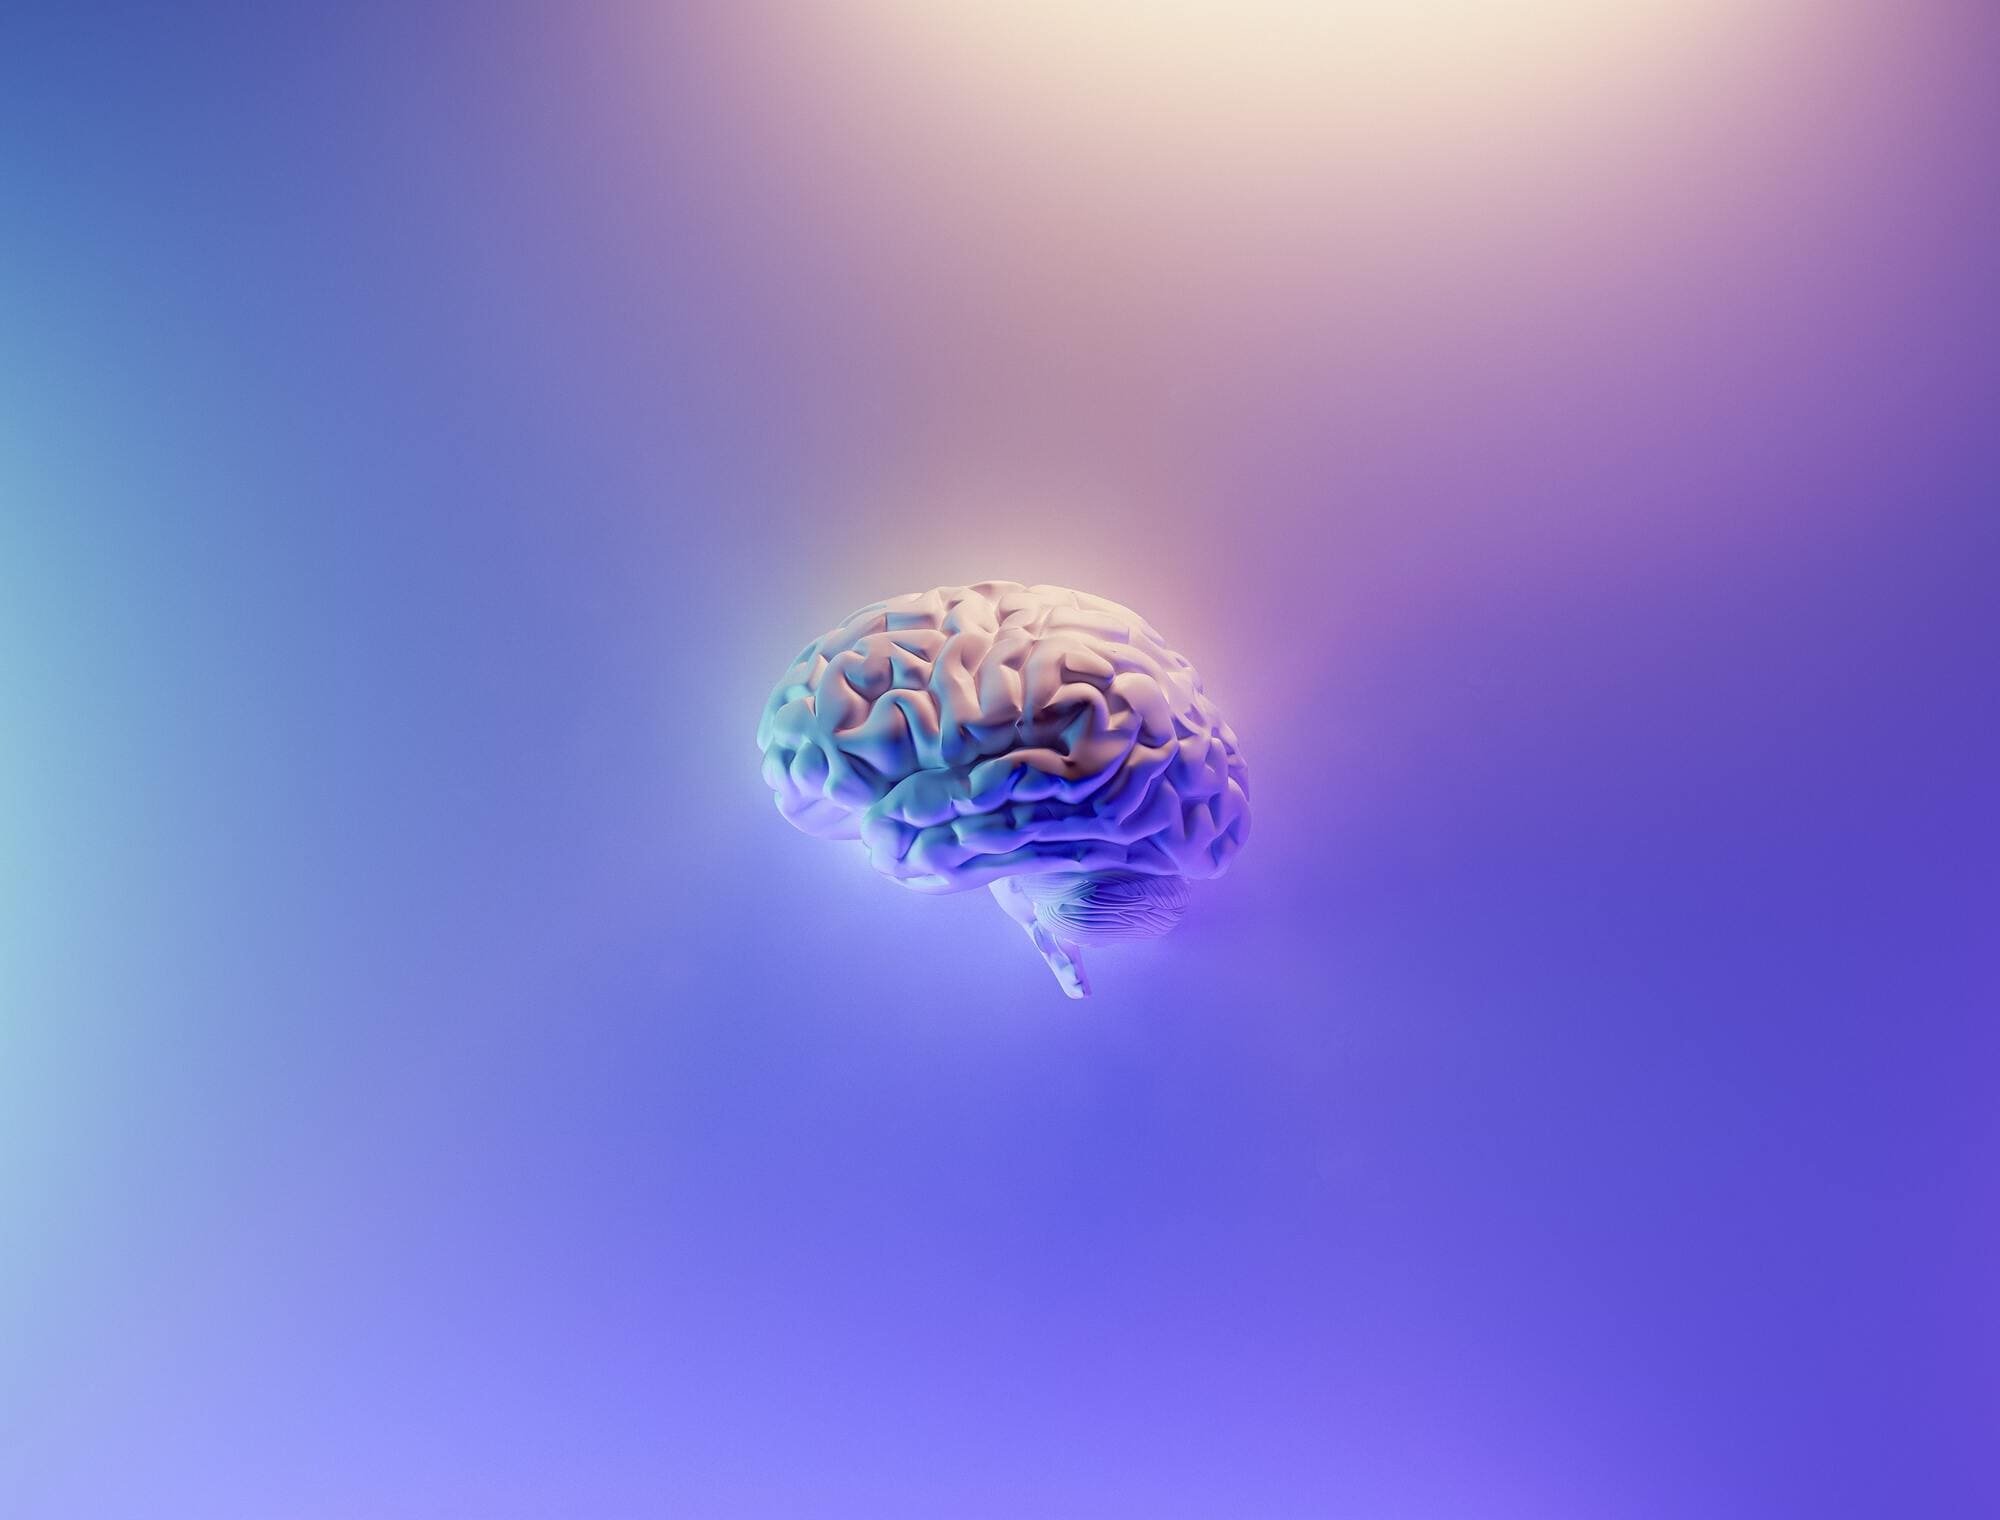 Abstrahiertes Bild von einem Gehirn, auf einem farbigen Hintergrund